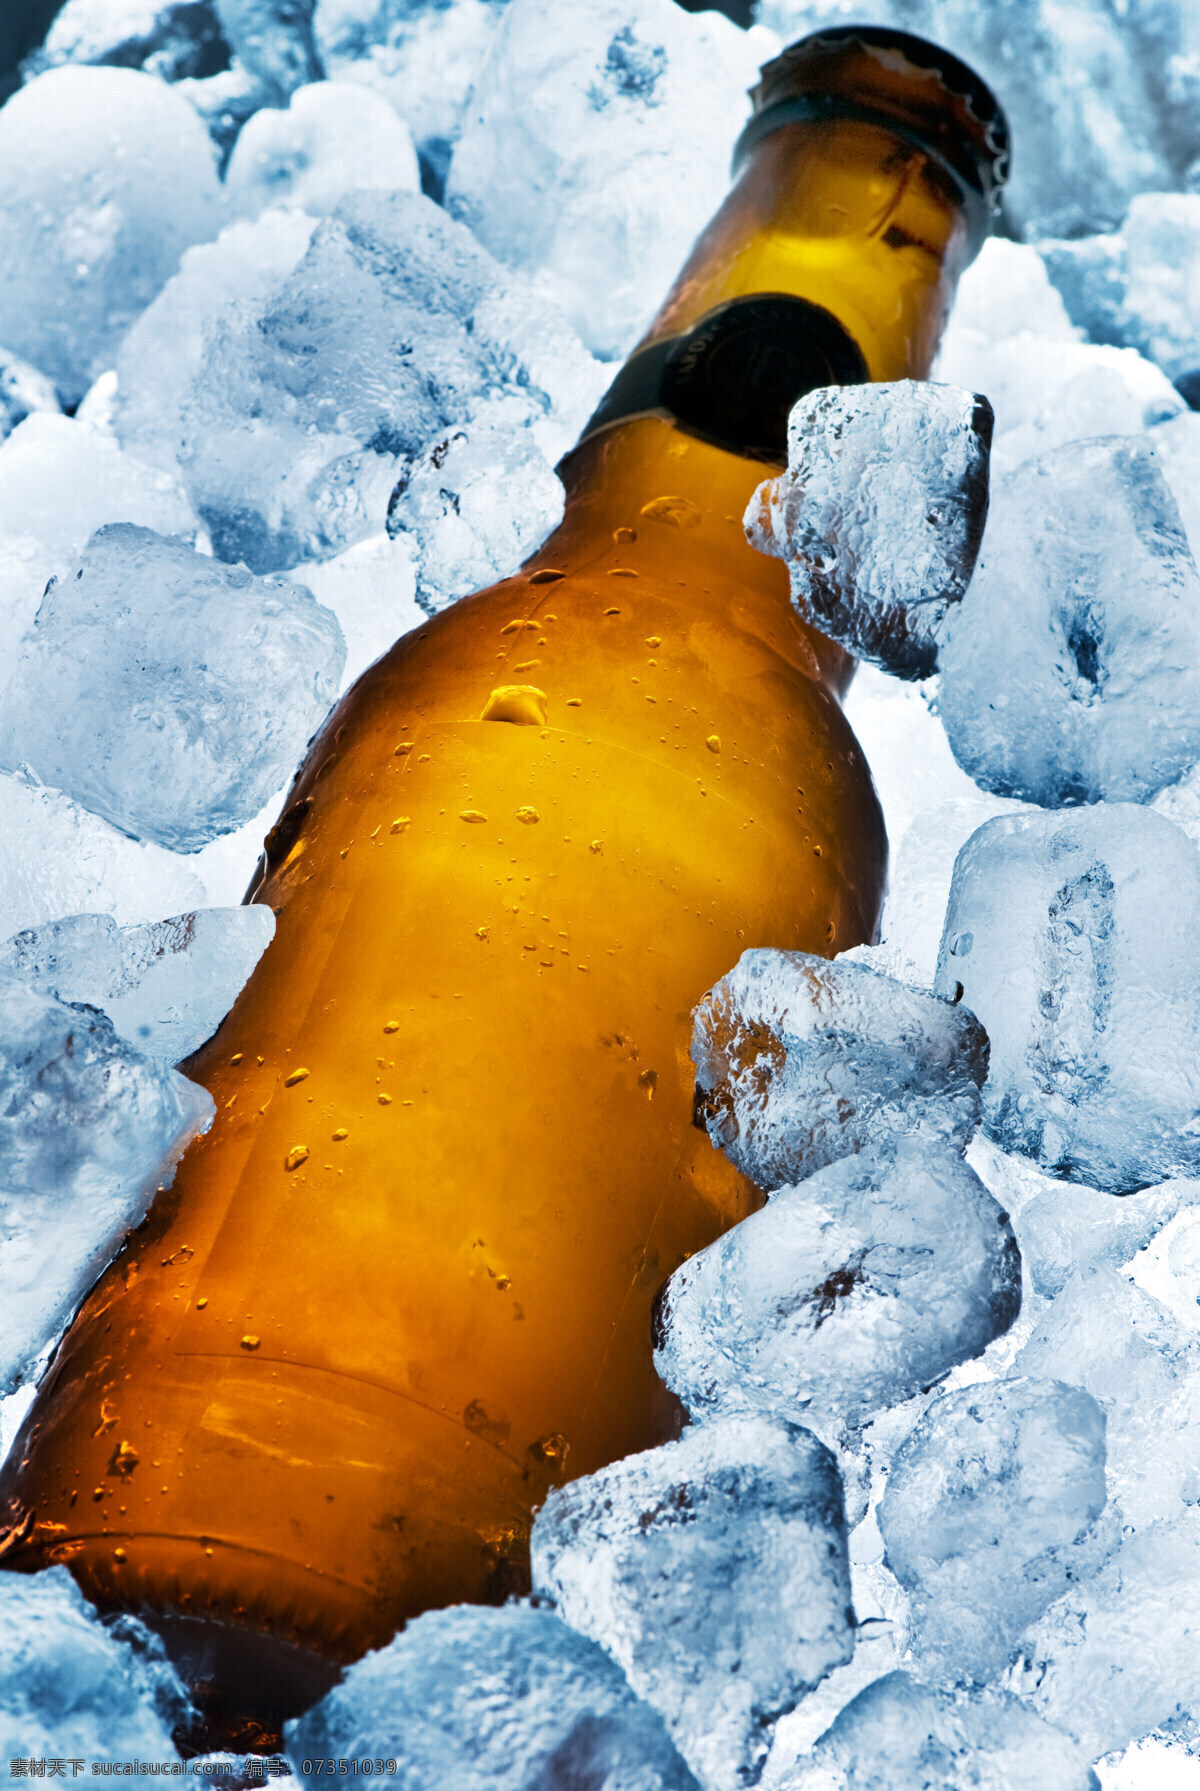 冰块 堆 里 瓶 冷饮 冰 冰冷 许多冰块 瓶子 一个瓶子 一瓶 玻璃瓶 饮料 冰块堆 啤酒 高清图片 酒类图片 餐饮美食